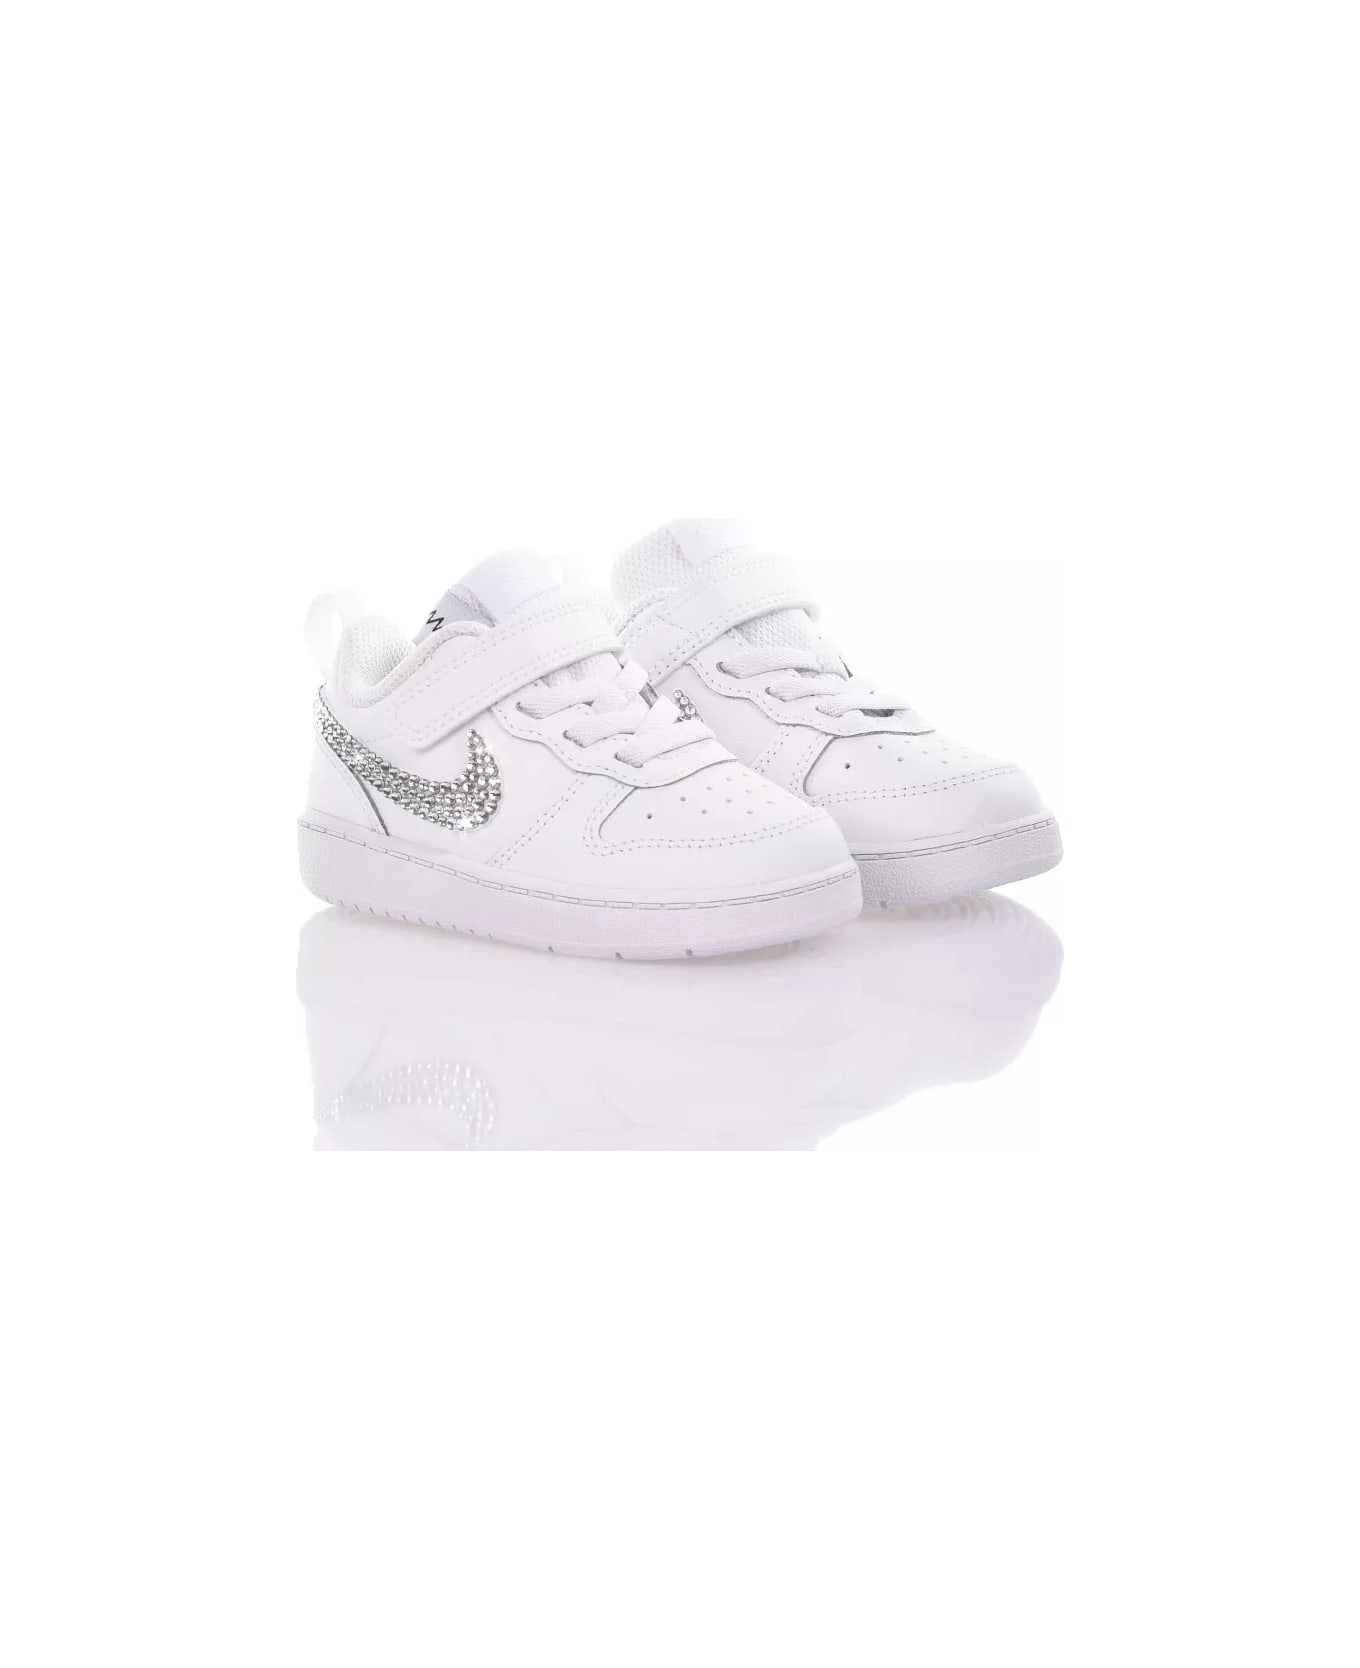 Mimanera Nike Baby Swarovski Custom シューズ